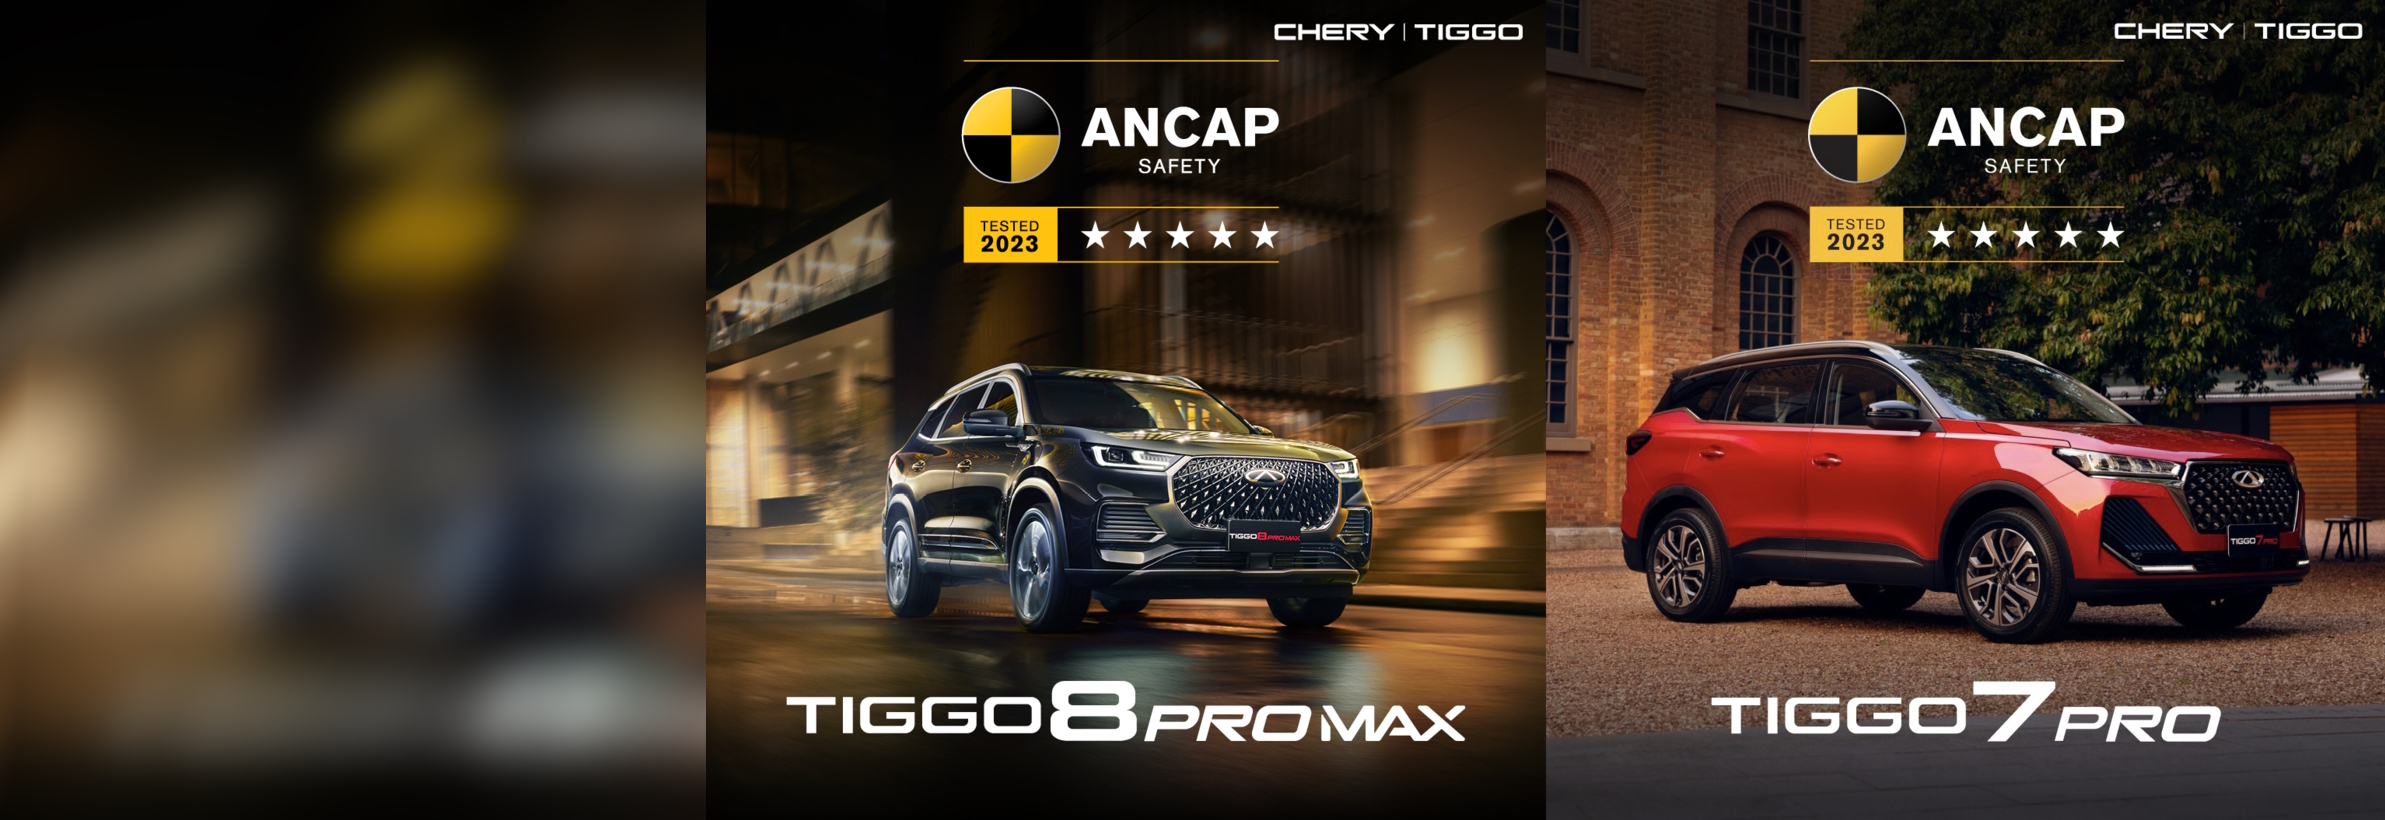 Chery reçoit sa deuxième « 5 étoiles » avec la nouvelle Tiggo 8 Pro Max.